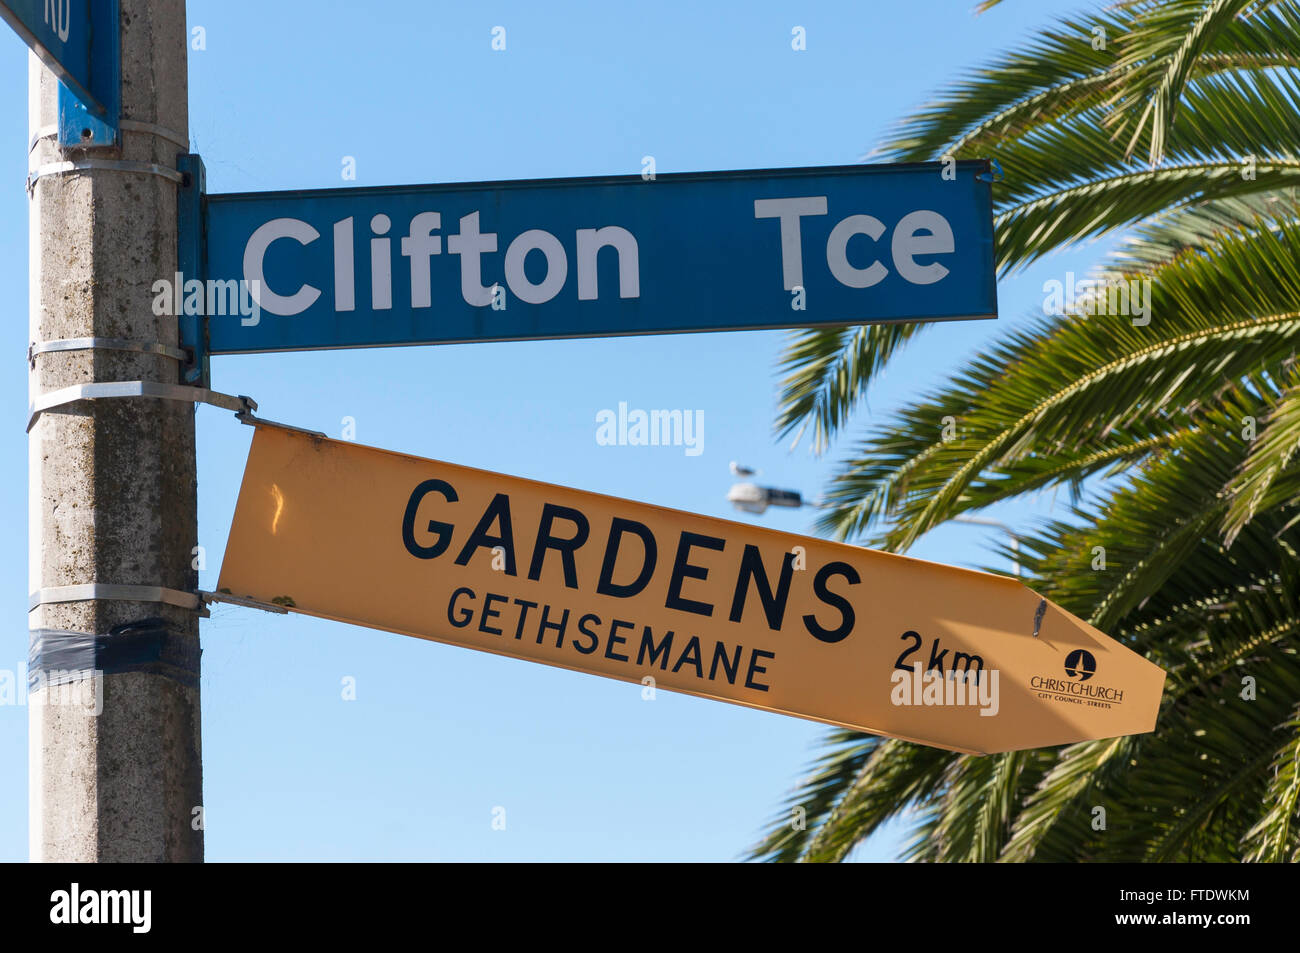 Terrasse et Jardins de Gethsémani Clifton Road sign, Clifton, Sumner, Christchurch, Canterbury, Nouvelle-Zélande Région Banque D'Images